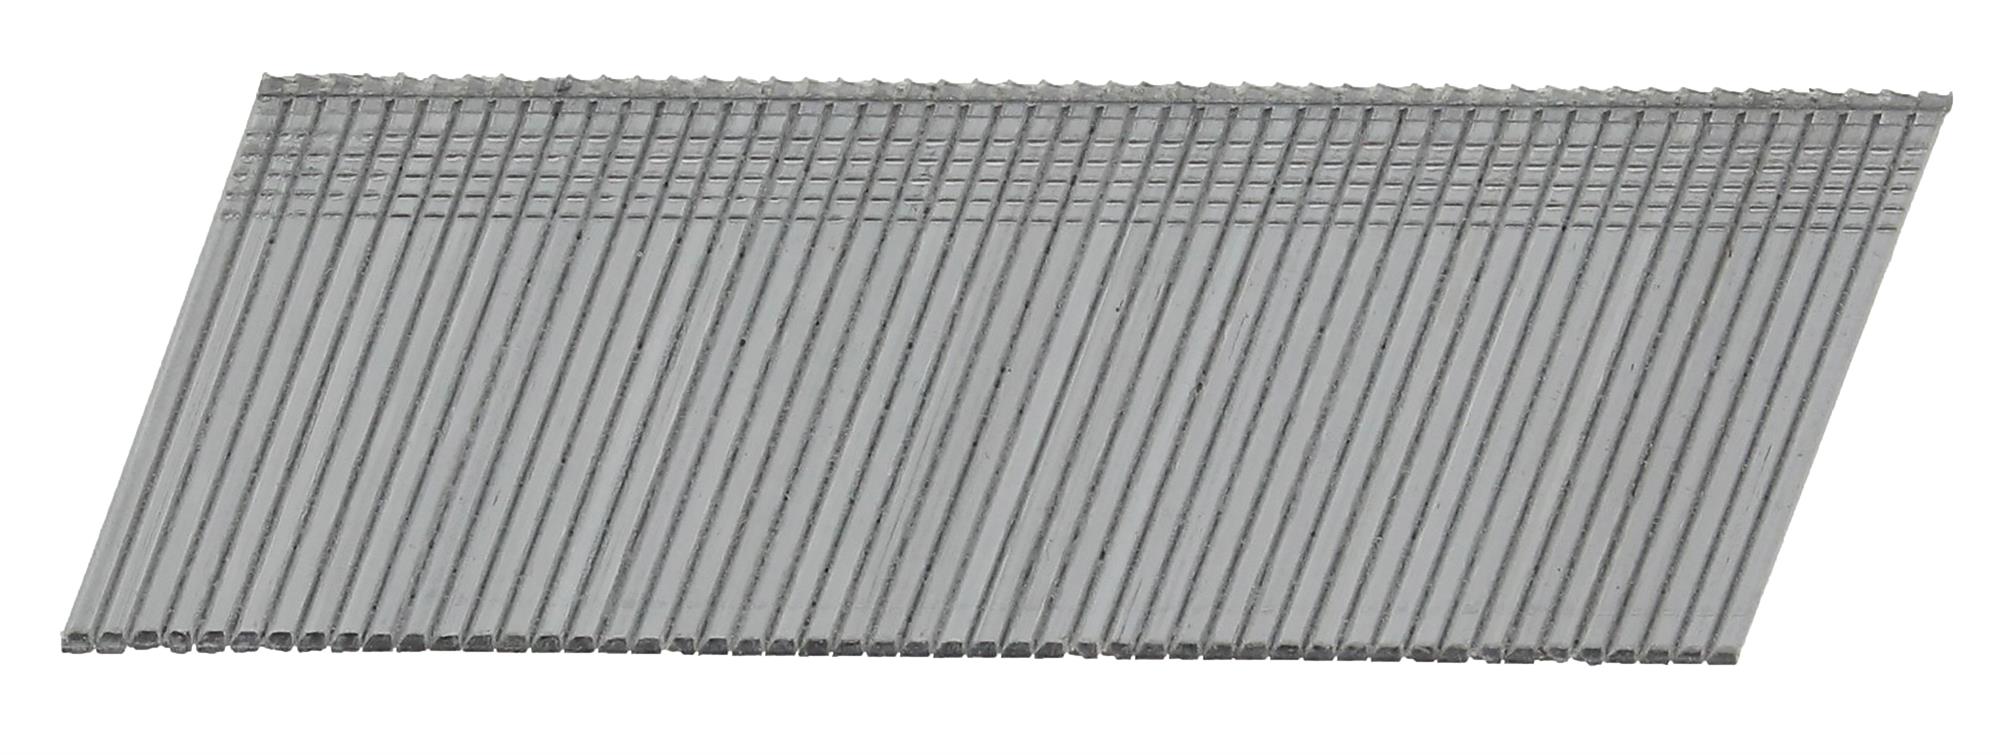 Hřebíky FeZn Paslode AF16 20° hladké 1,6×51 mm 2 000 ks